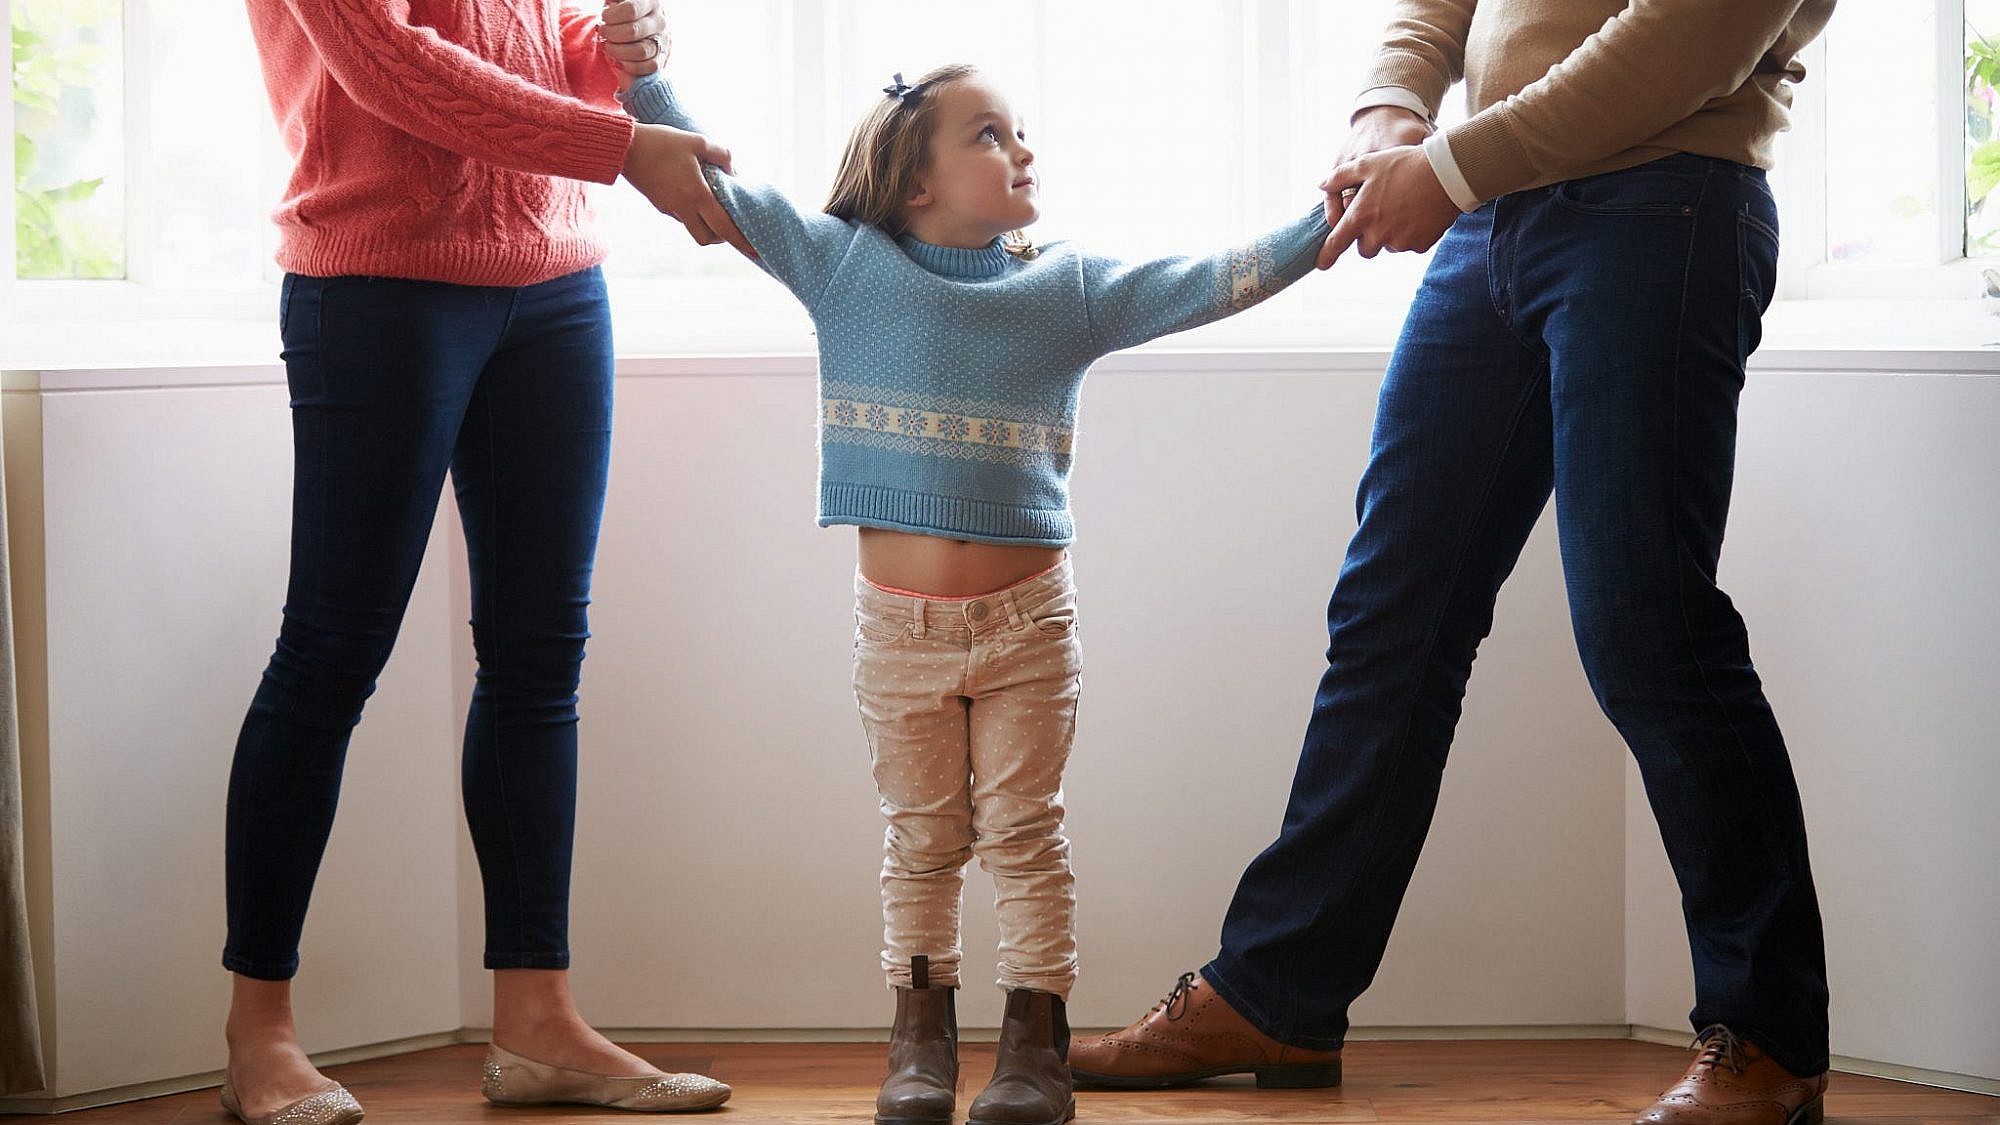 אל תריבו על הילדים. החמ״ל המשפטי להורים גרושים | צילום: Shutterstock